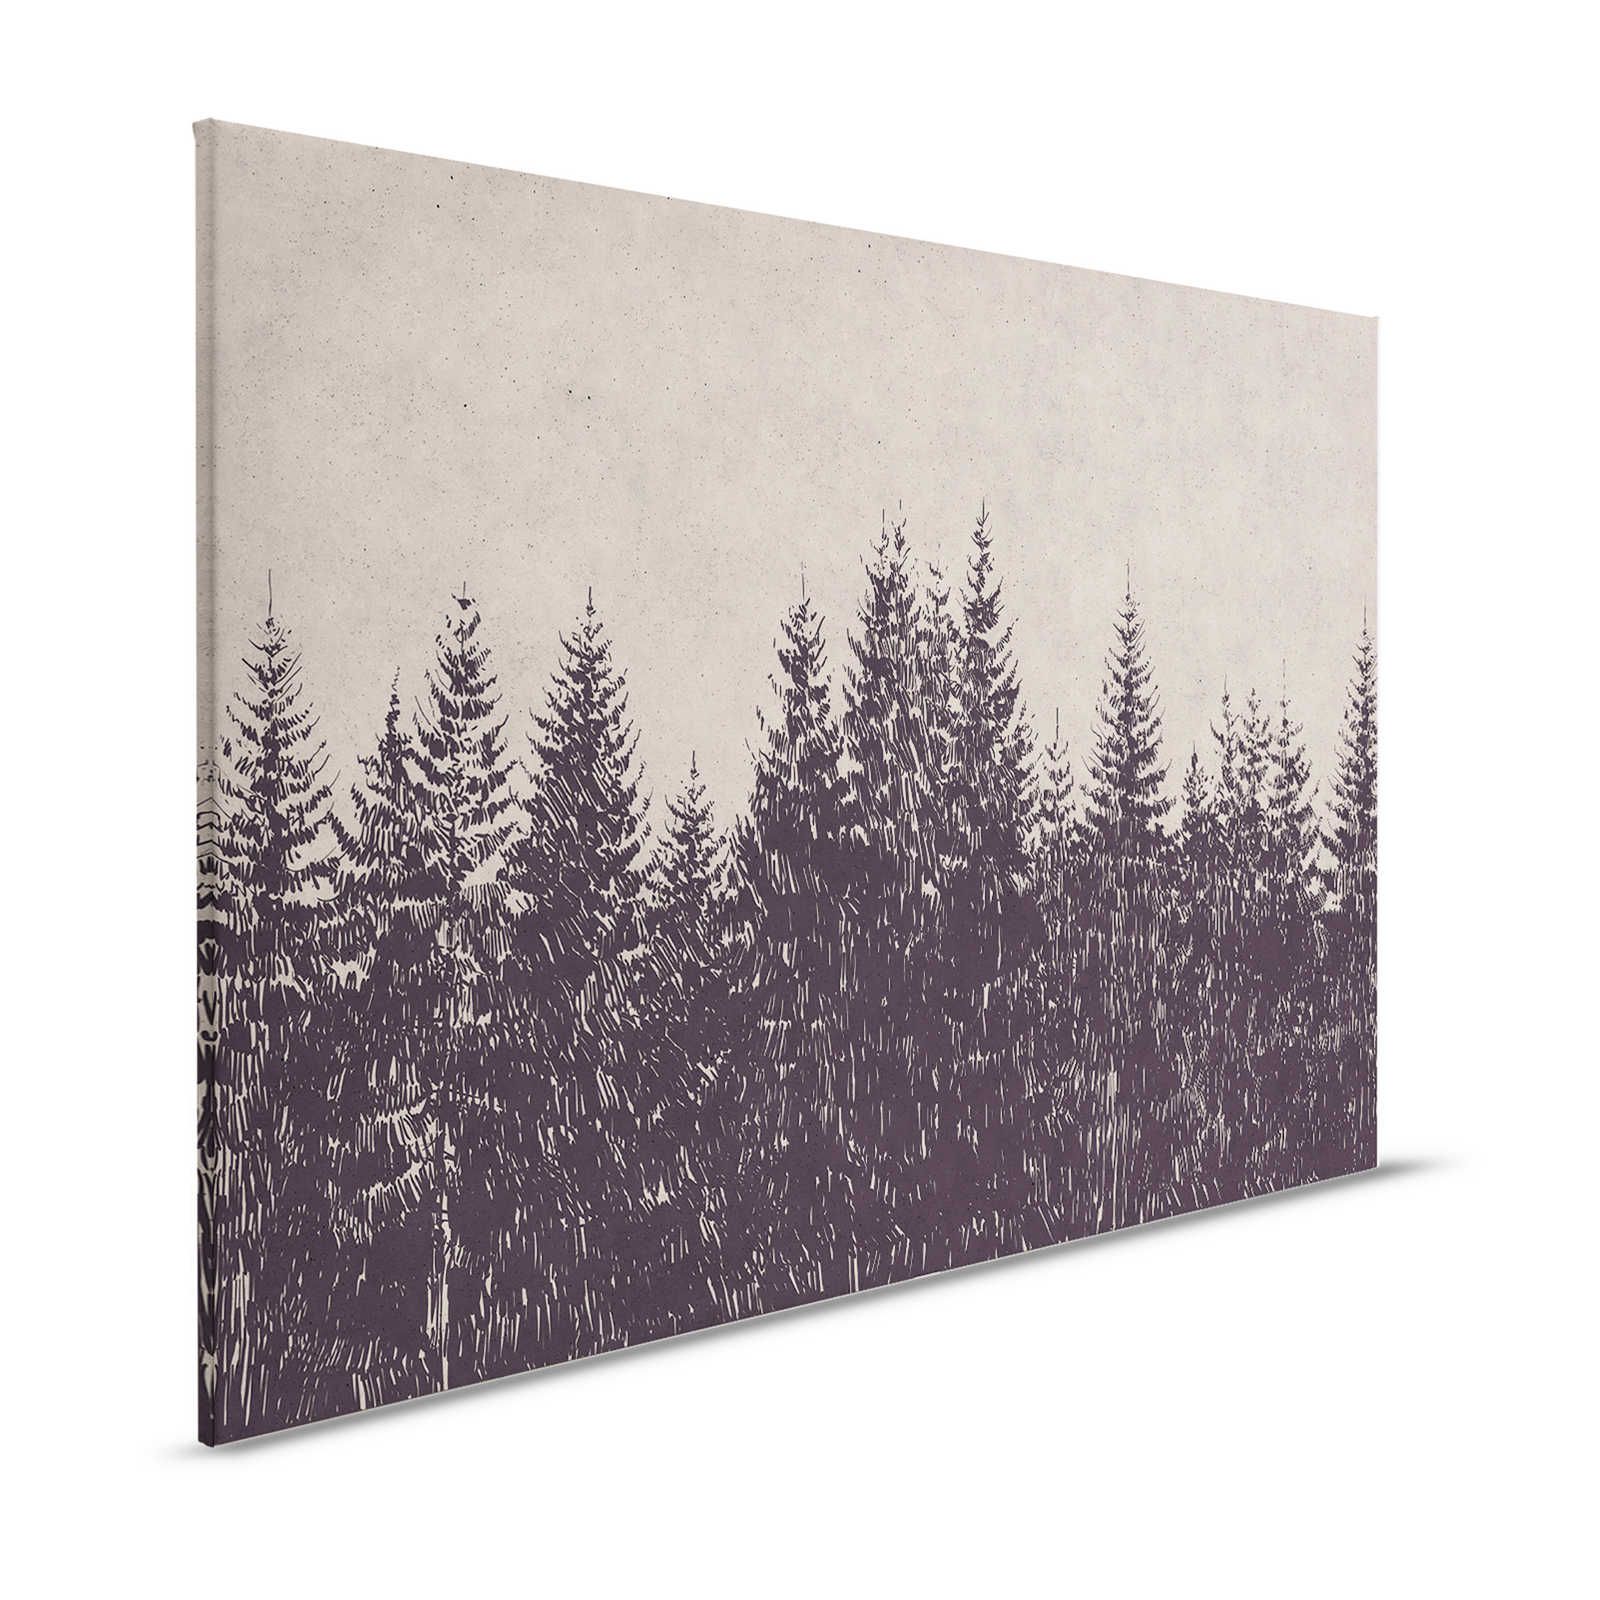 Leinwandbild Wald Tannen im Zeichenstil – 1,20 m x 0,80 m
